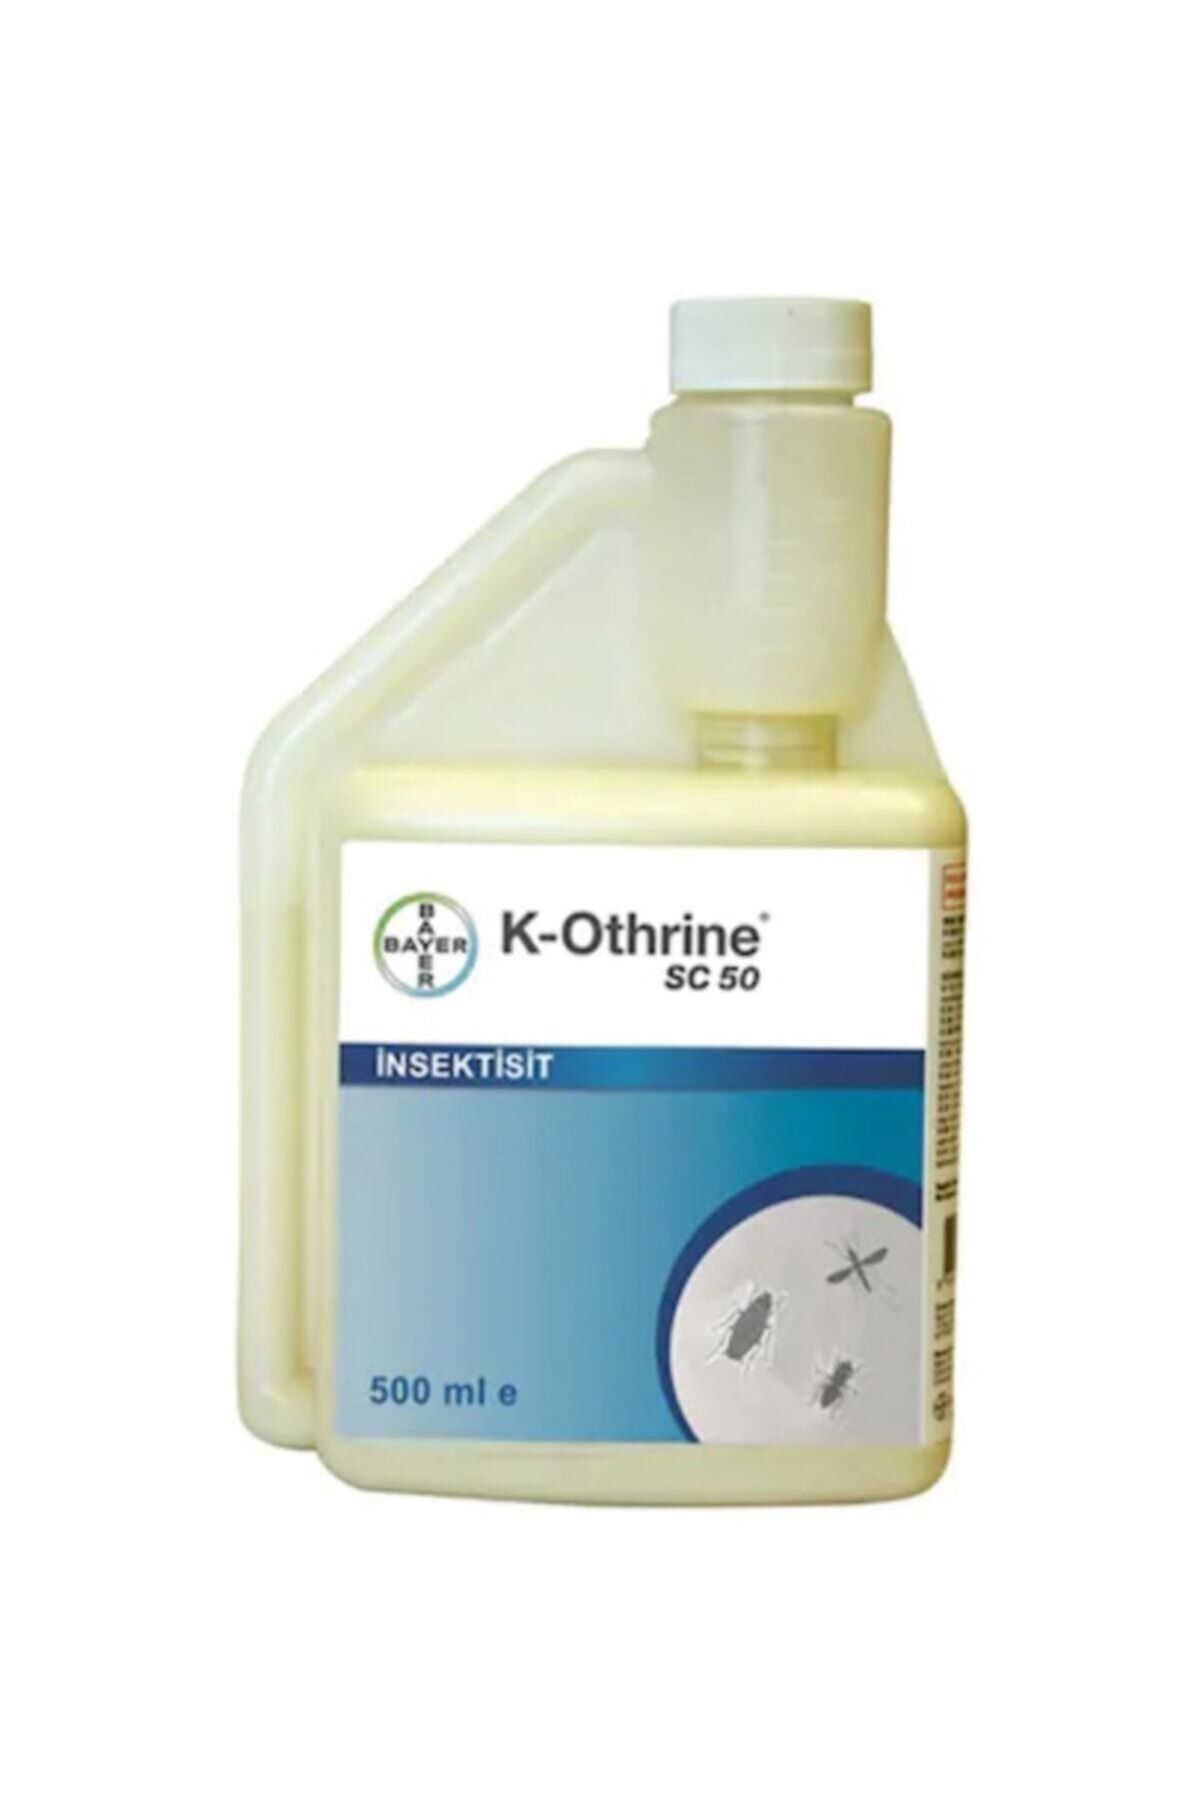 Bayer K-othrine Sc 50 500 ml